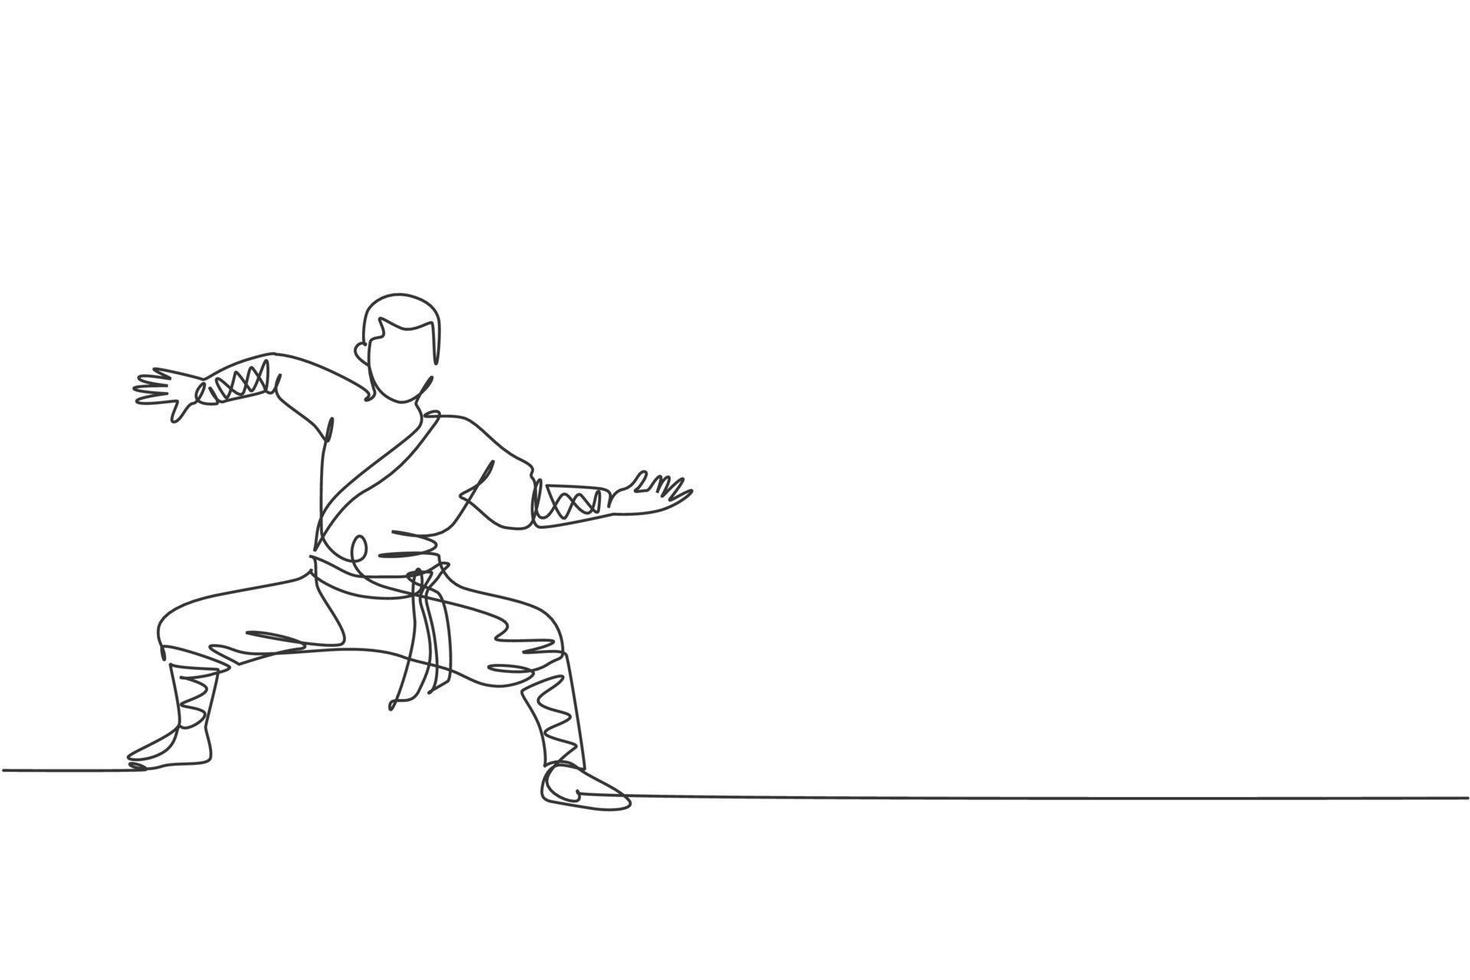 un dessin en ligne continu d'un jeune moine shaolin pratique le style kung fu au sol du temple. concept de sport de combat traditionnel chinois. illustration graphique vectorielle de conception de dessin à une seule ligne dynamique vecteur